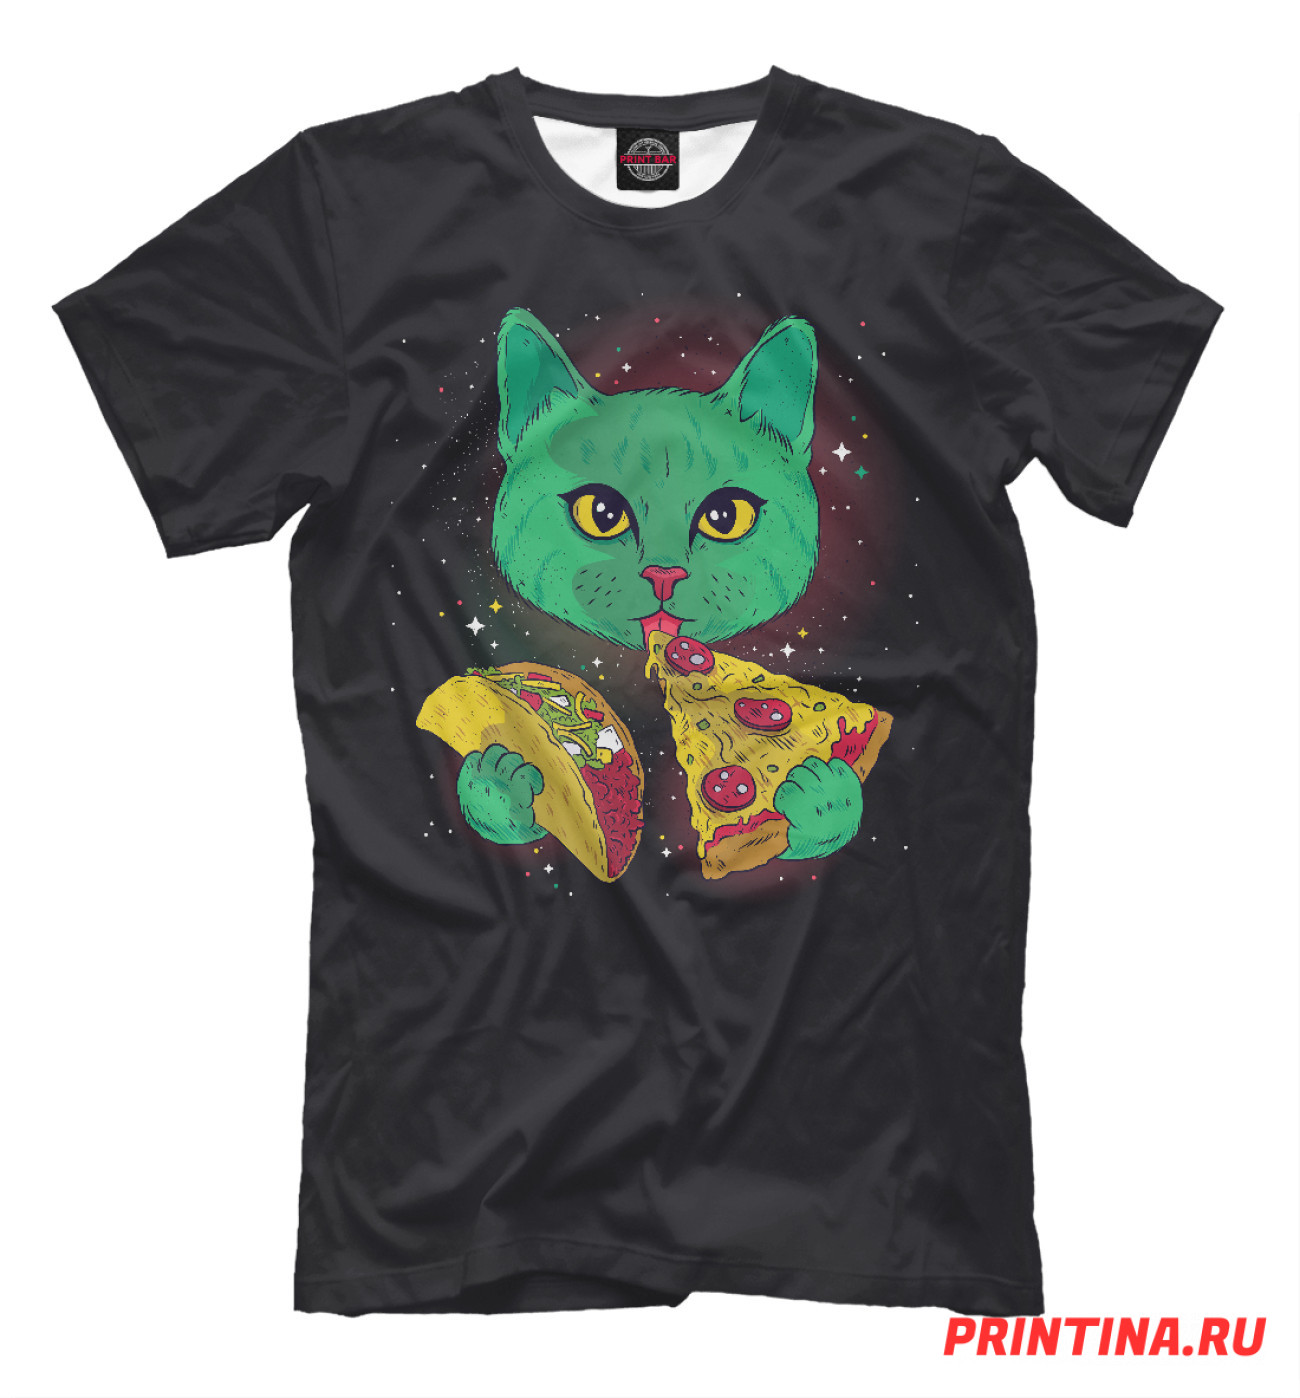 Мужская Футболка Cosmic pizza cat, артикул: CIS-379633-fut-2